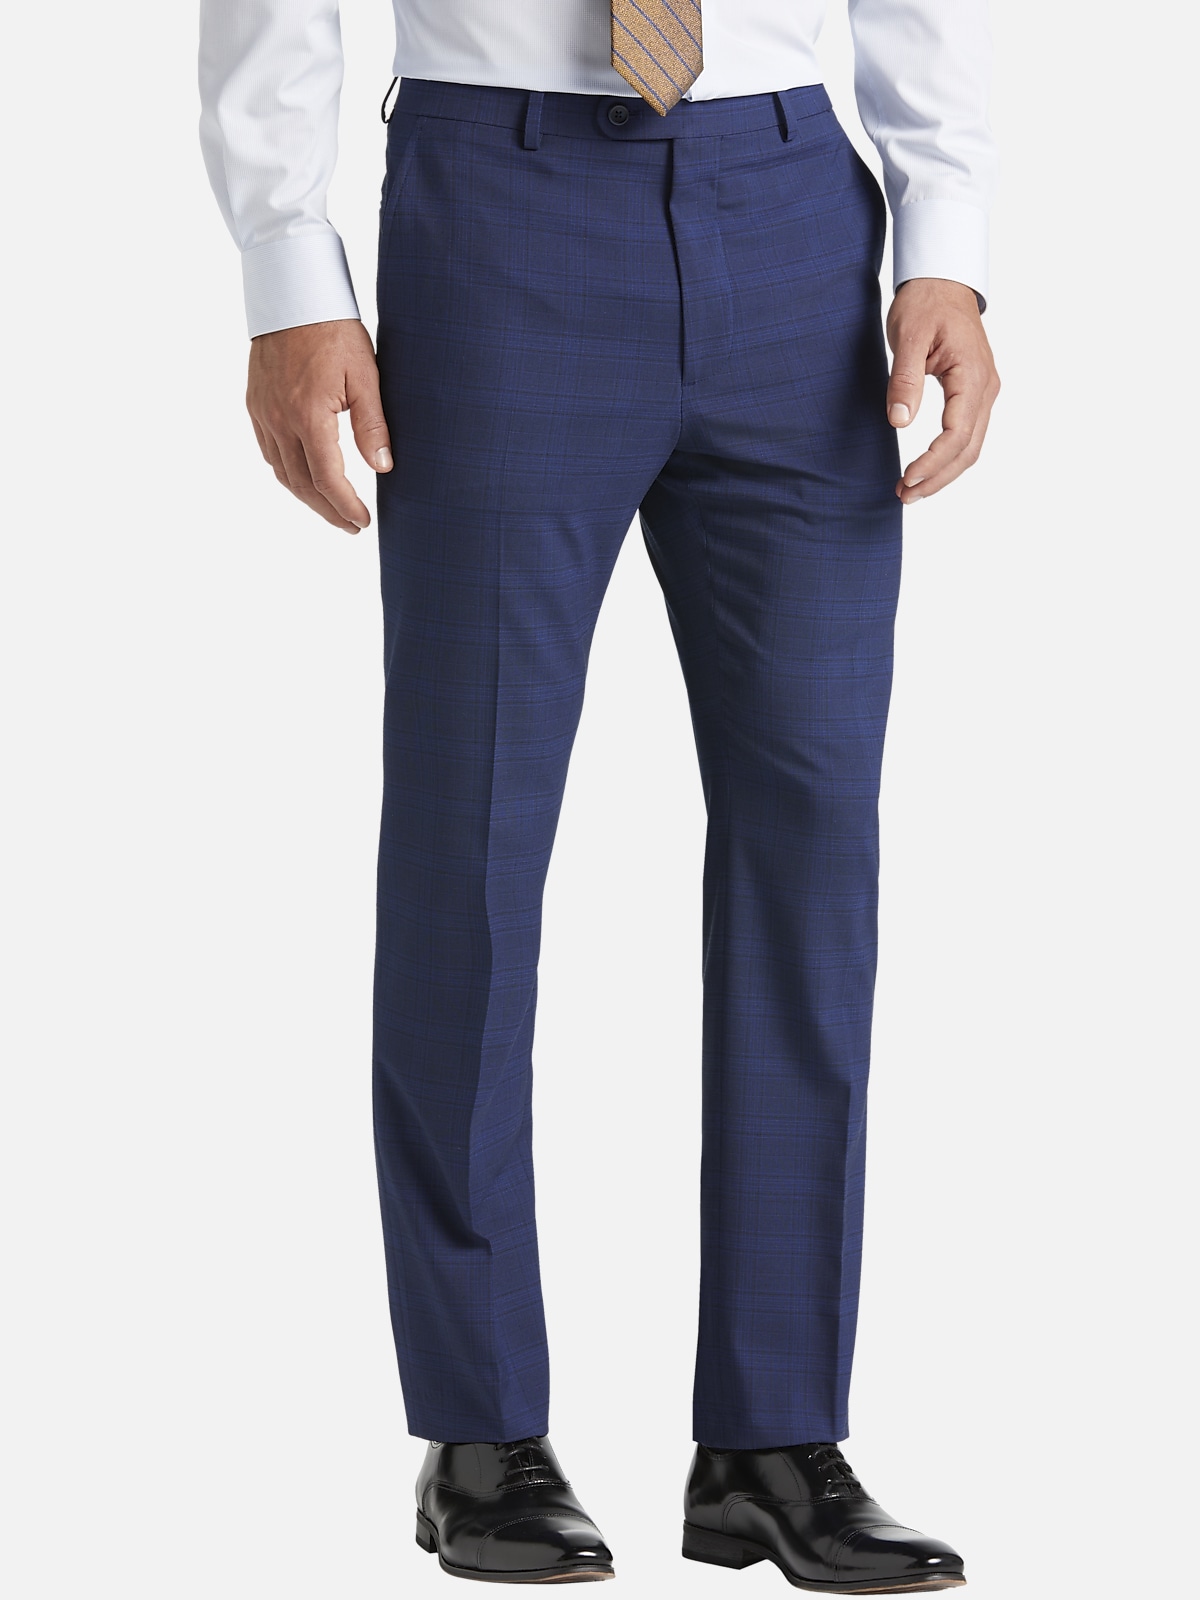 Pronto Uomo Modern Fit Plaid Suit Separates Pants | Pants| Men's Wearhouse